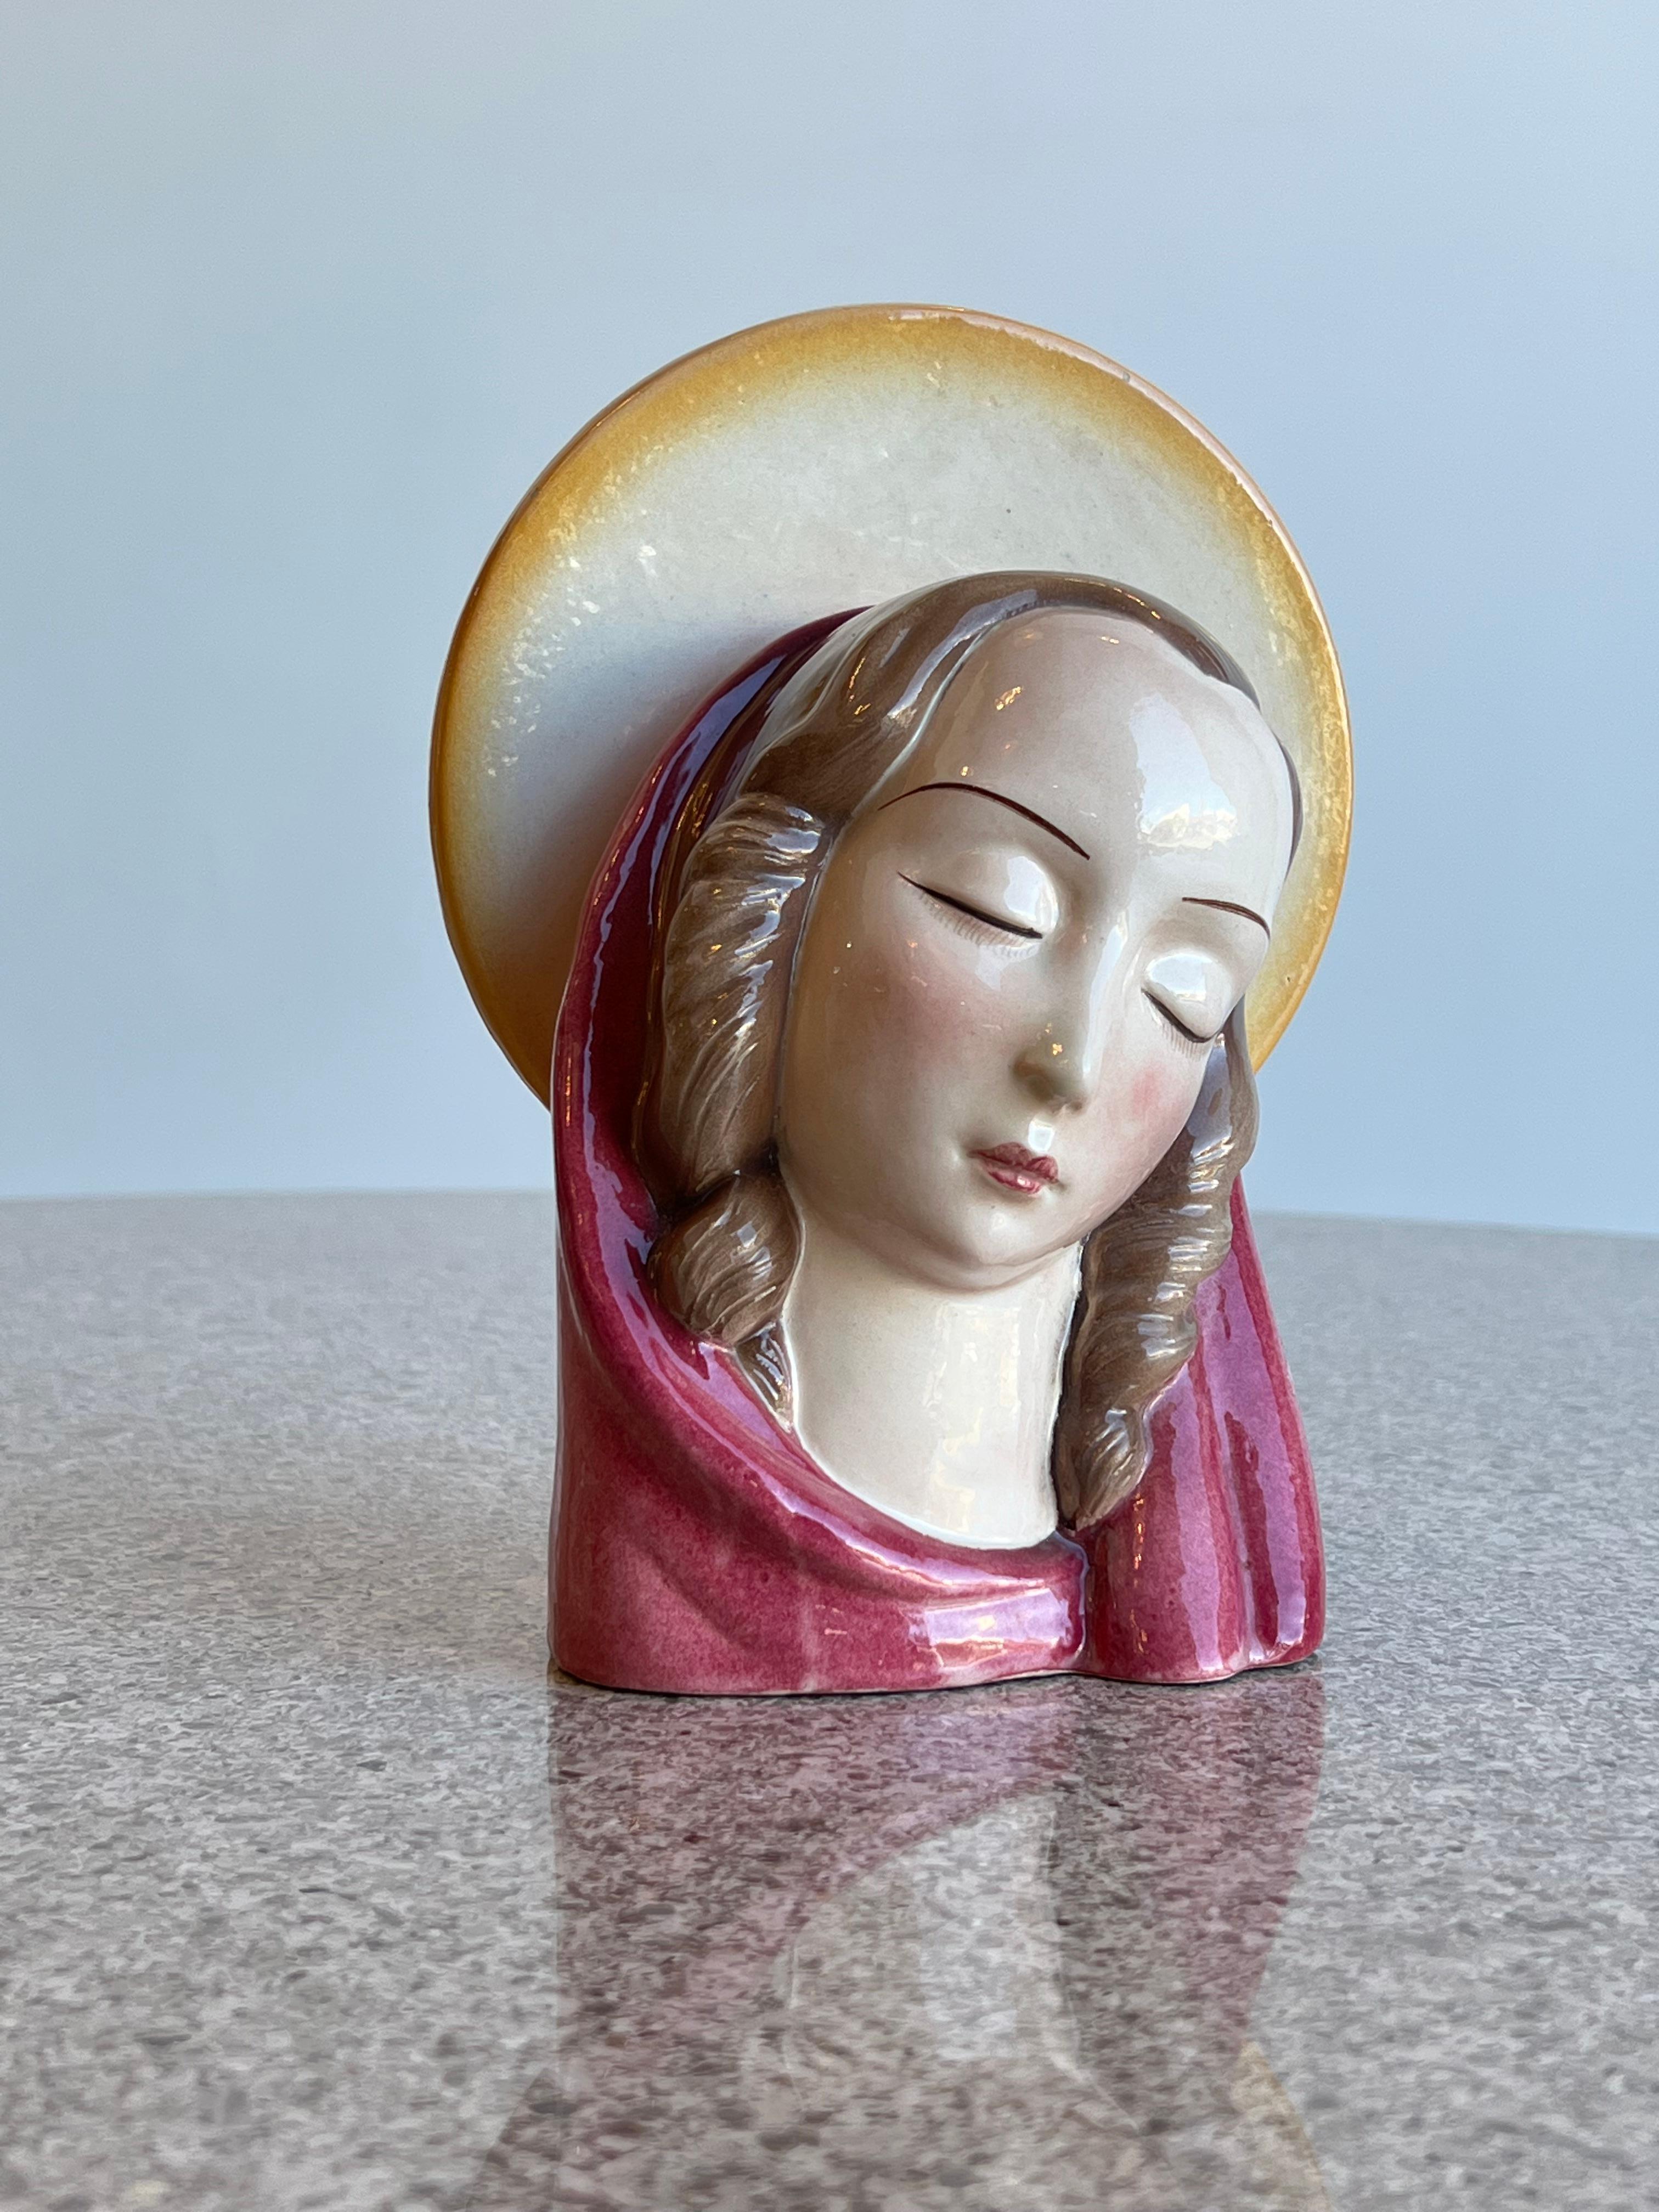 Vierge en céramique italienne peinte à la main par Etruria Colle Val d'Elsa 1950s. 
Colle Val d'Elsa, un lieu célèbre en Toscane où l'on travaille la céramique depuis toujours.
  